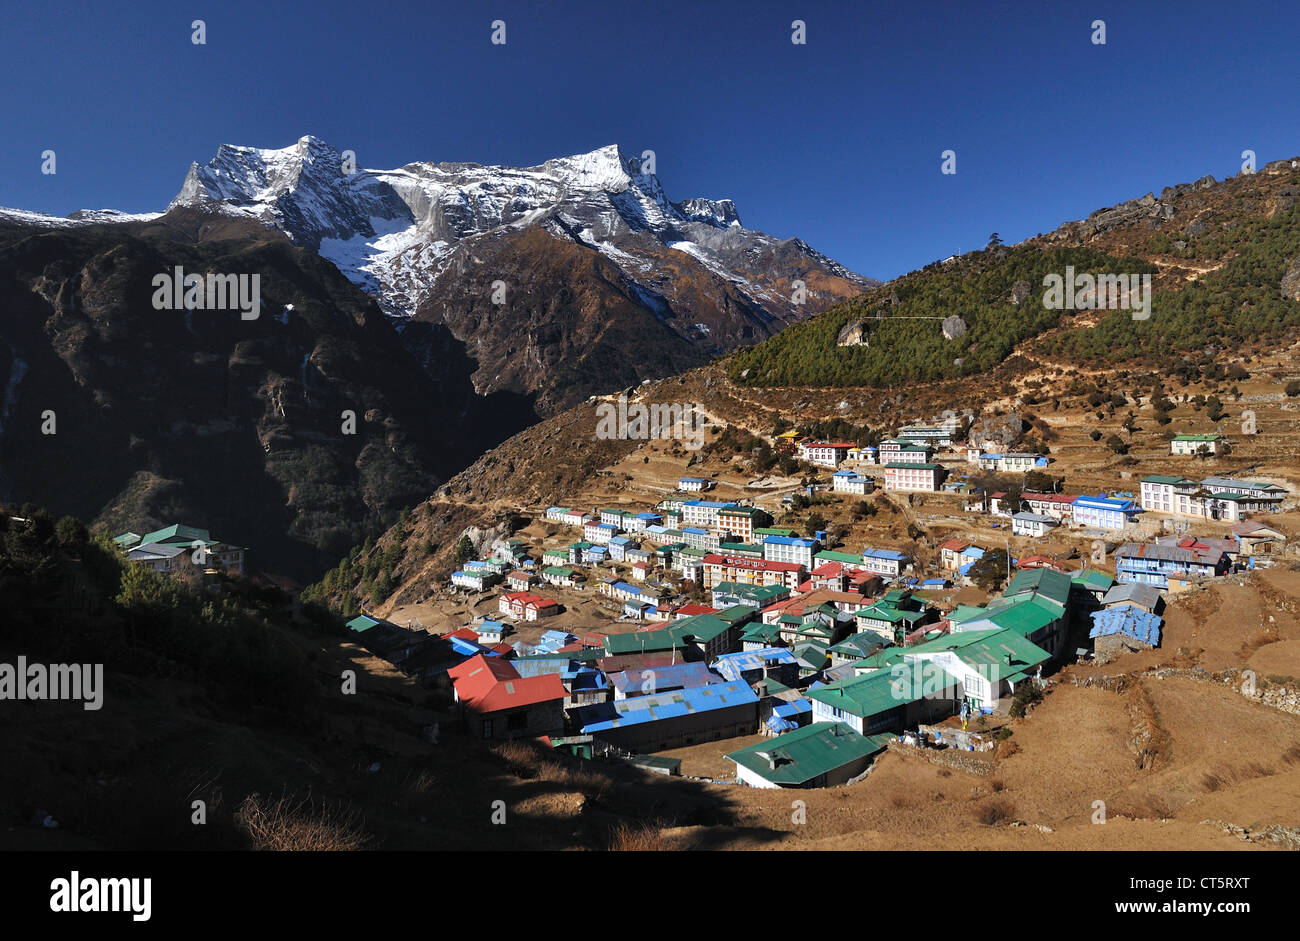 Avis de Namche Bazar dans la région de l'Everest Népal Banque D'Images